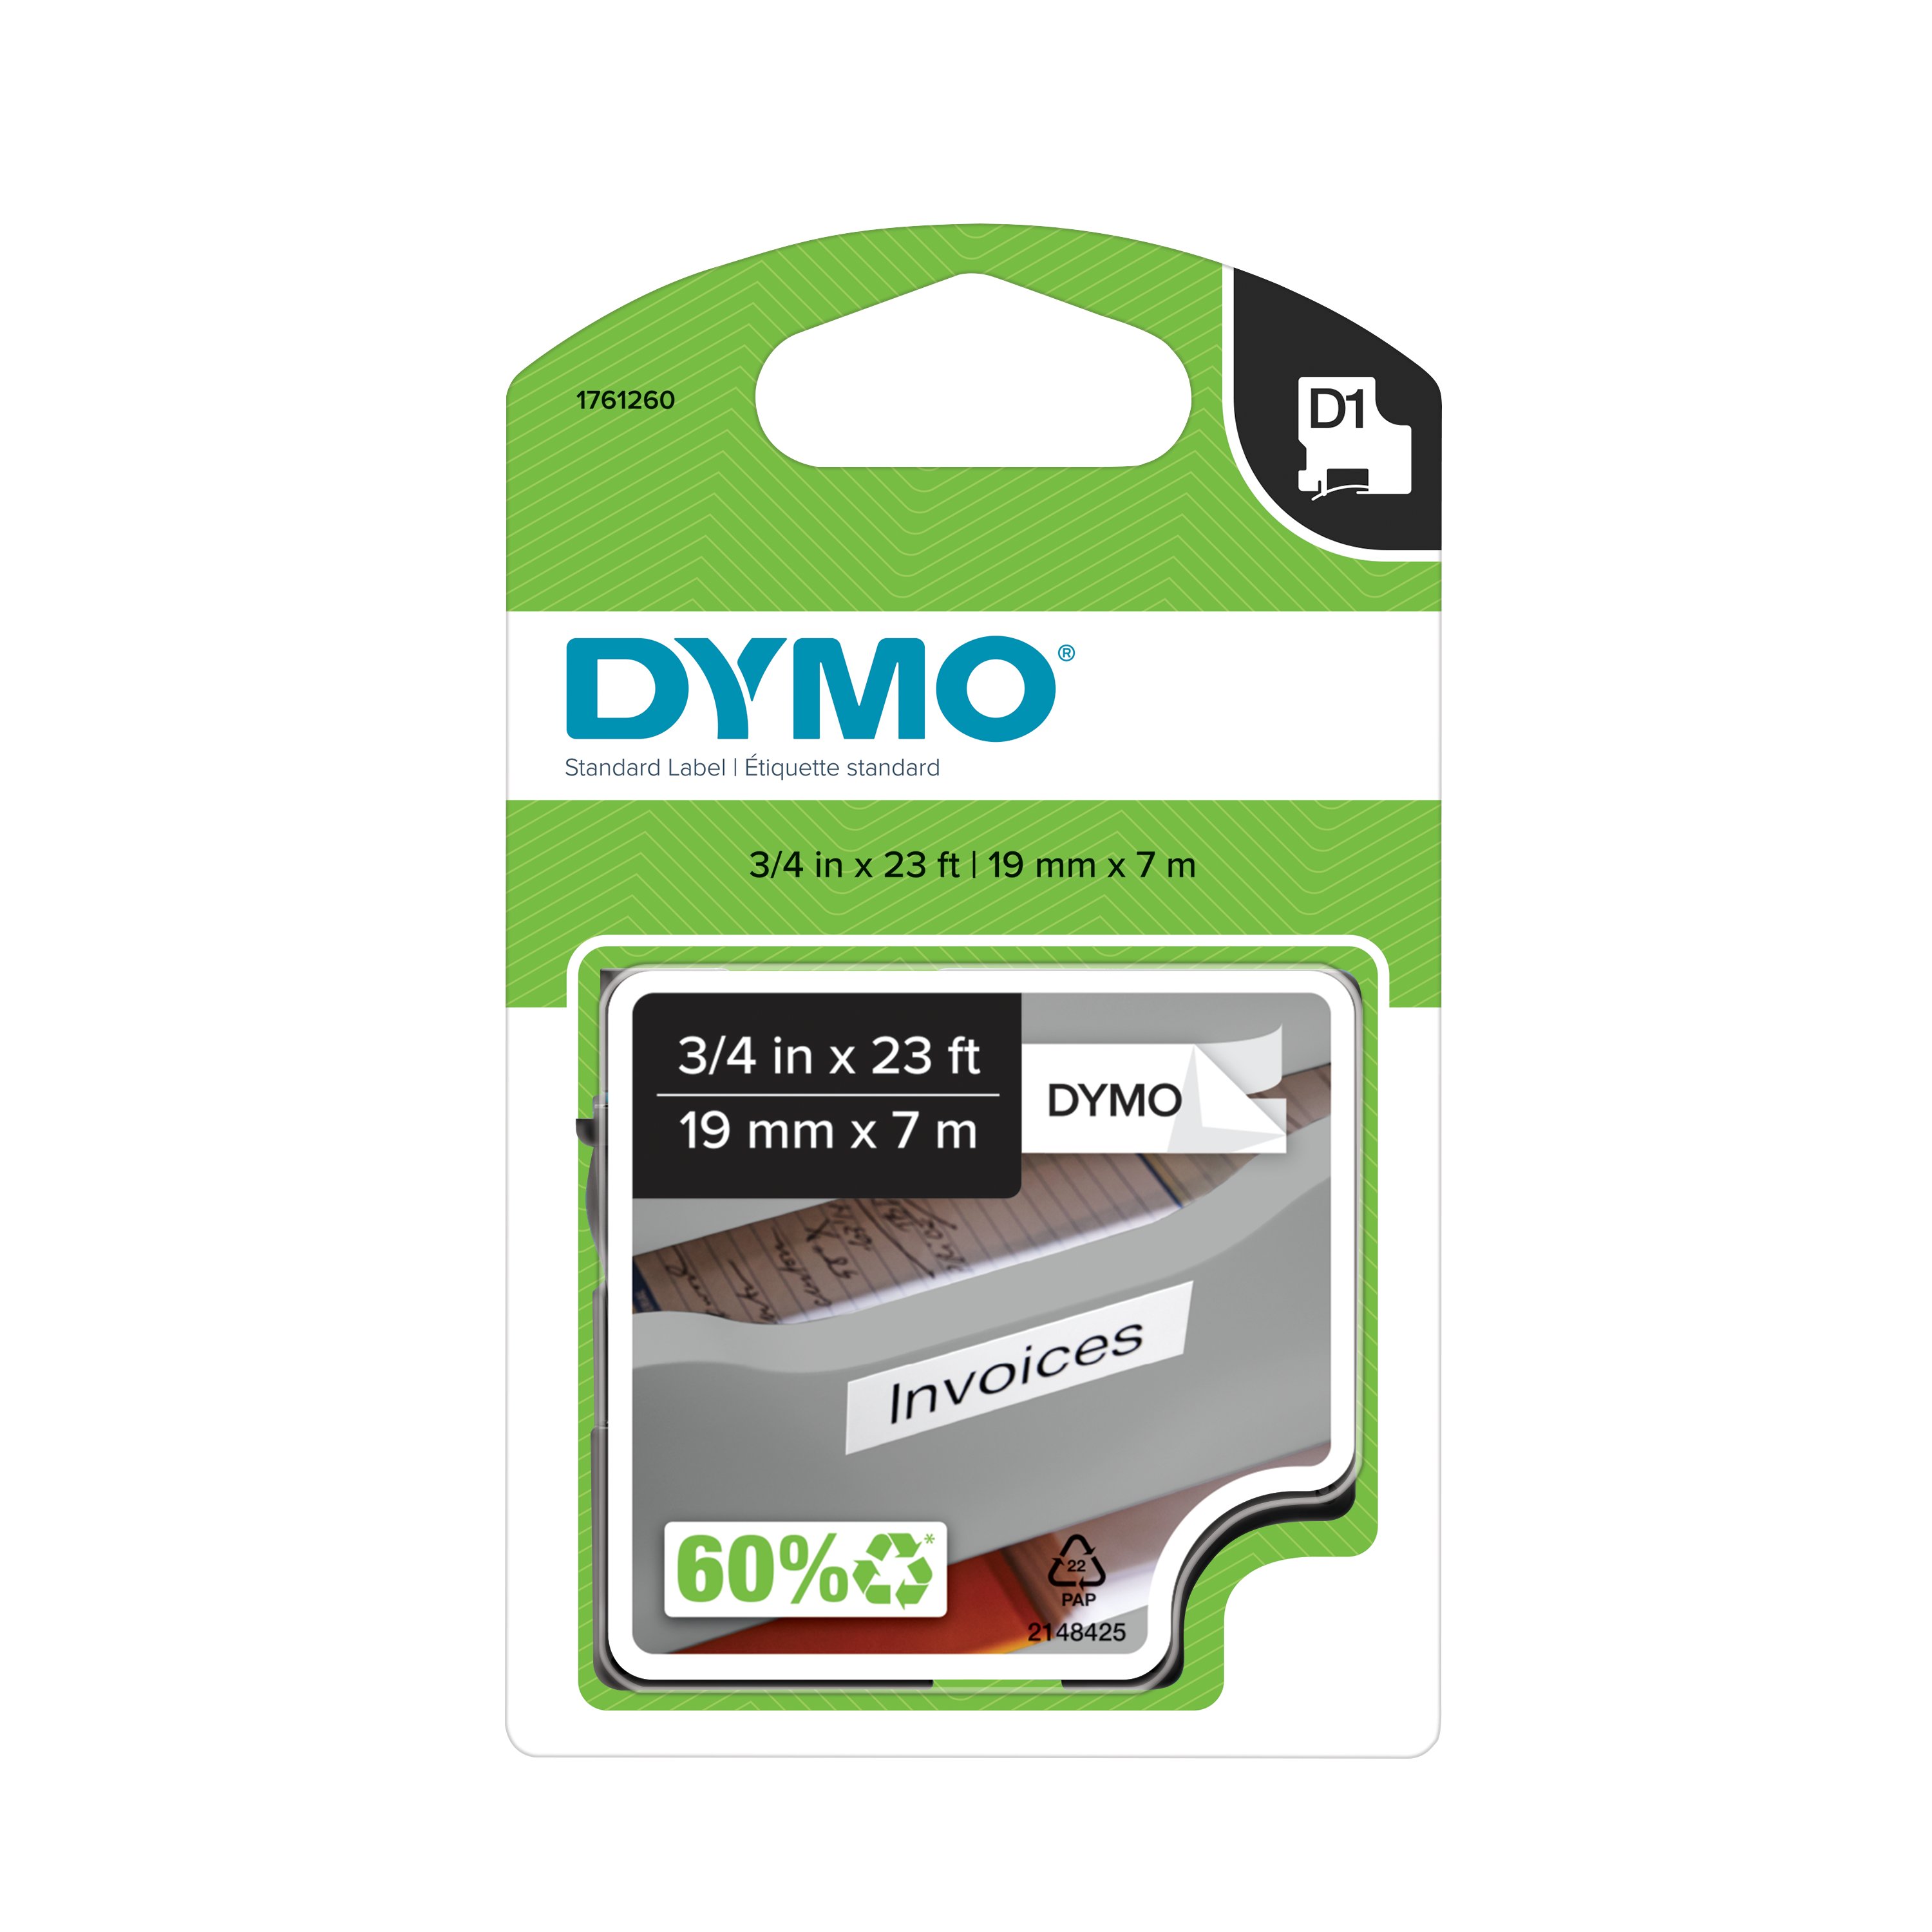 Cassette de ruban Dymo D1 - Largeur 12 mm